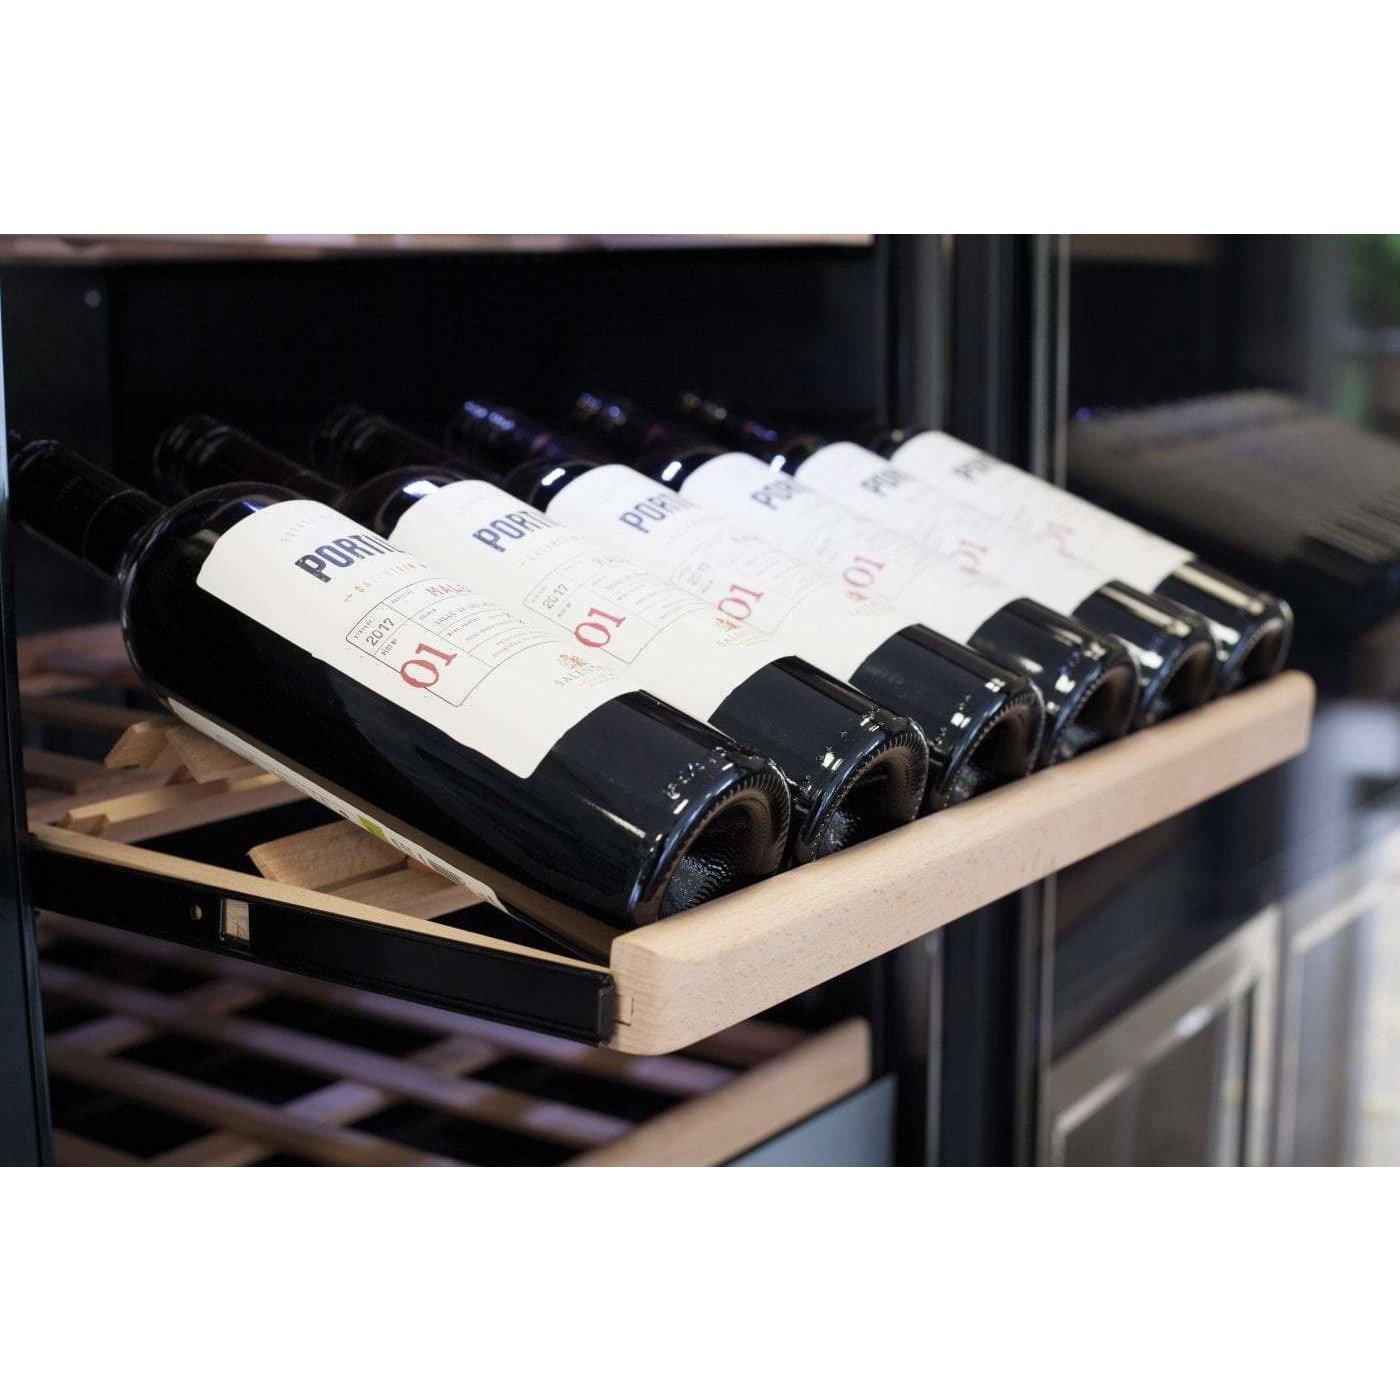 CASO WineComfort 126 665 - Freestanding Dual Zone Wine Cooler / Wine Fridge - 126 Bottles - 595mm Wide - winestorageuk